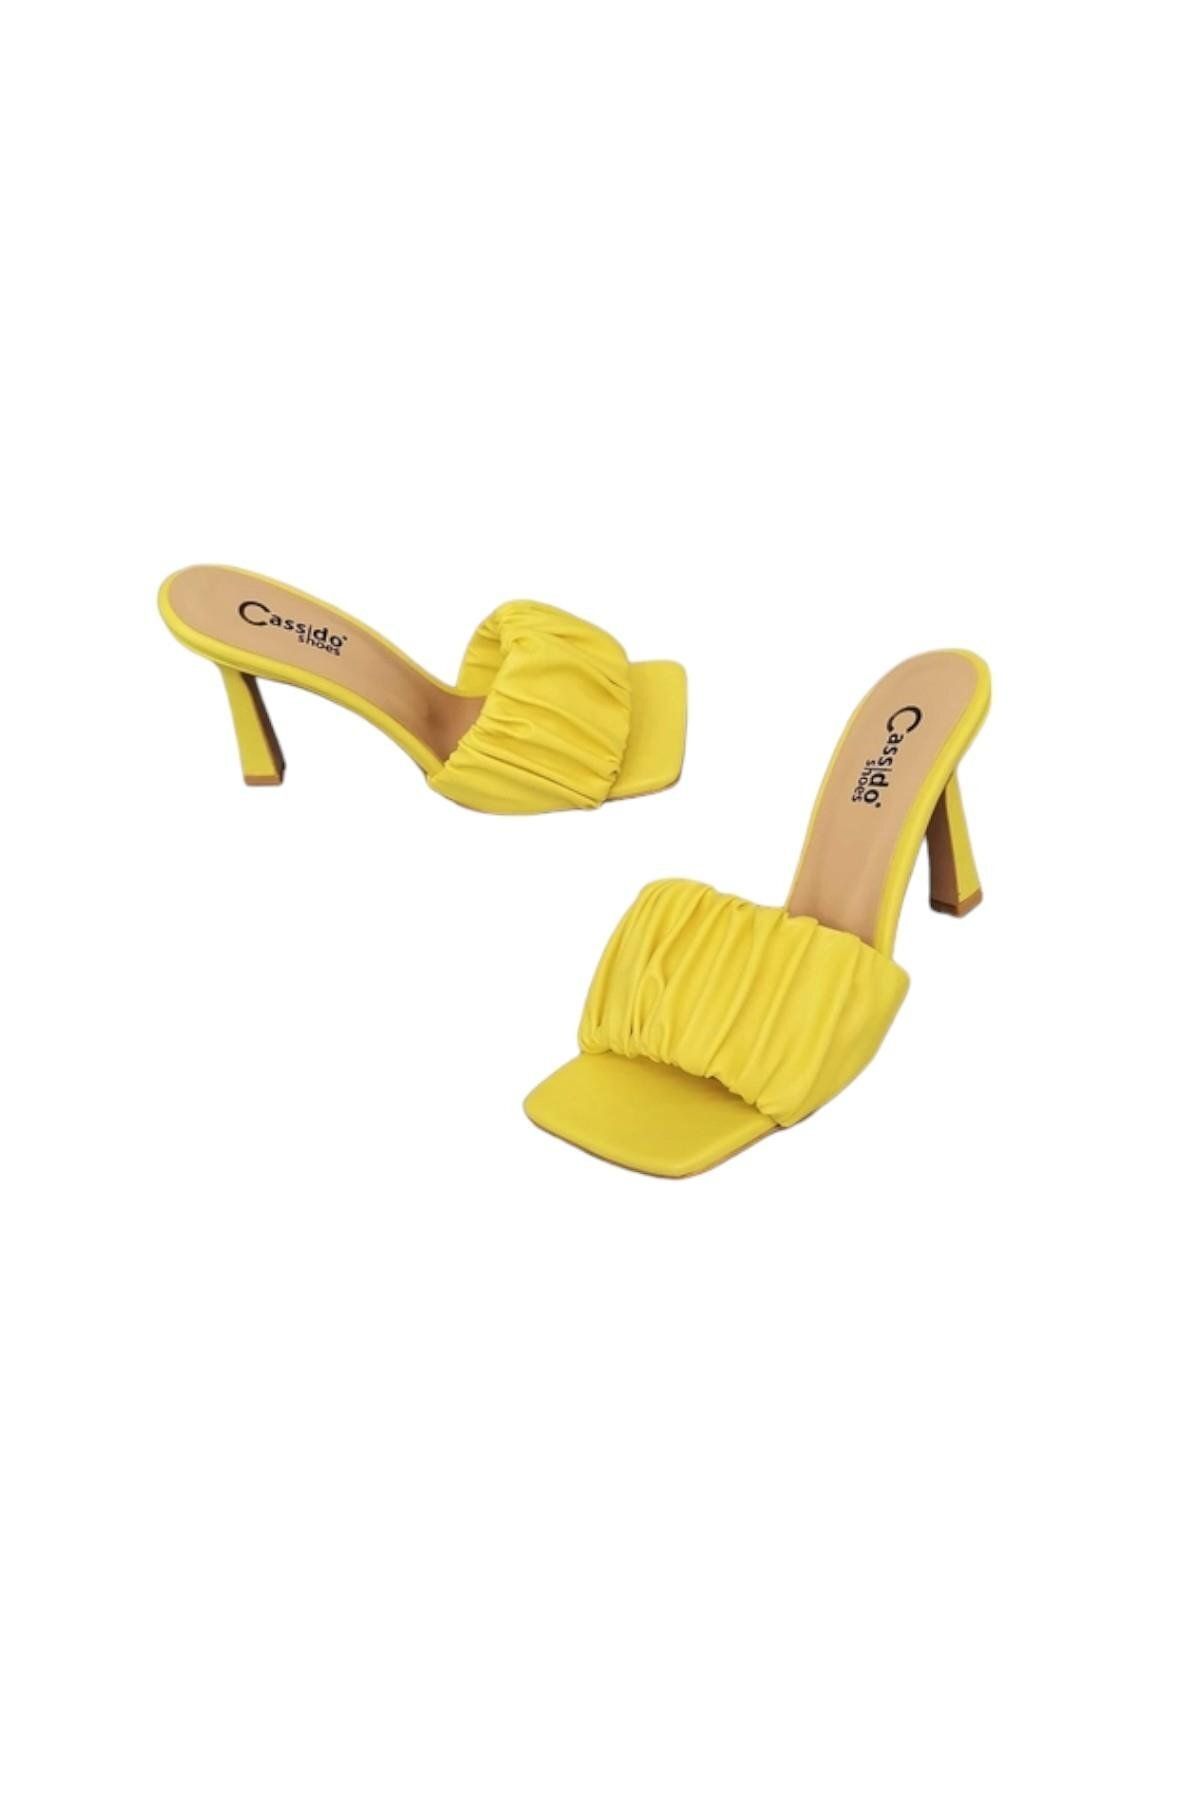 CassidoShoes Özel Tasarım Kadın Sarı Büzgülü Topuklu Terlik 012-140-131